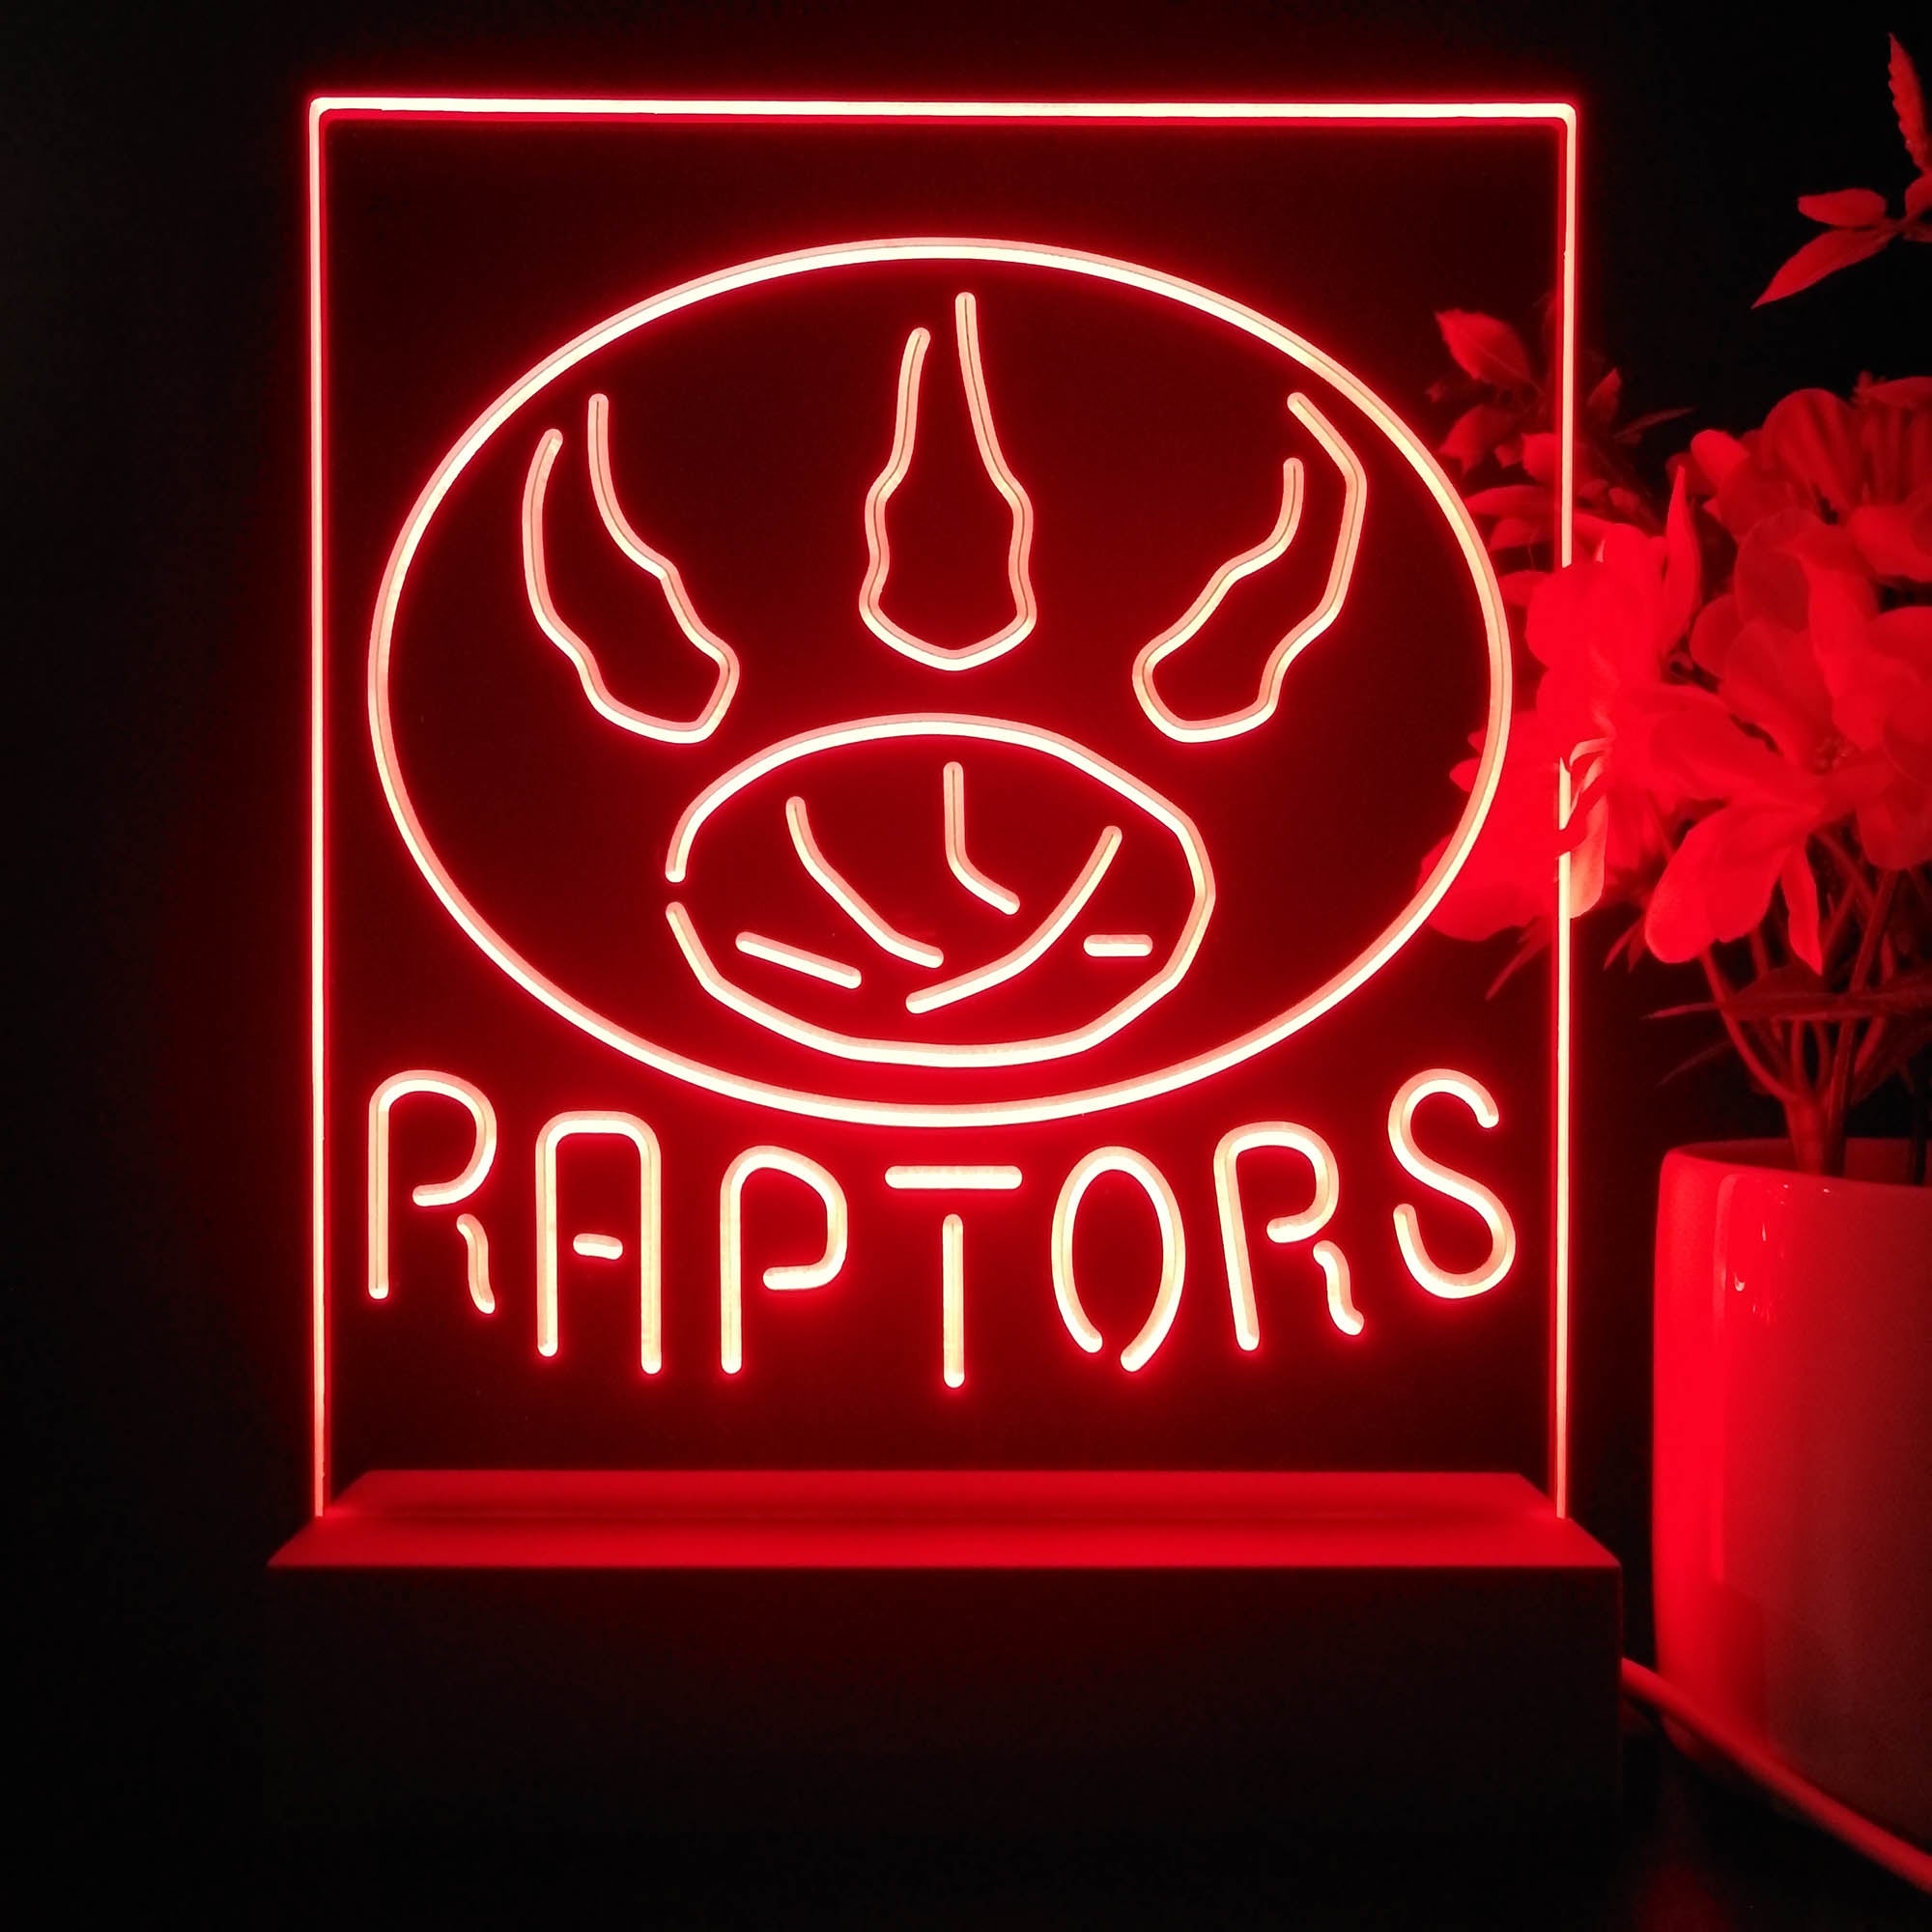 Toronto Raptors Neon Sign Table Top Lamp